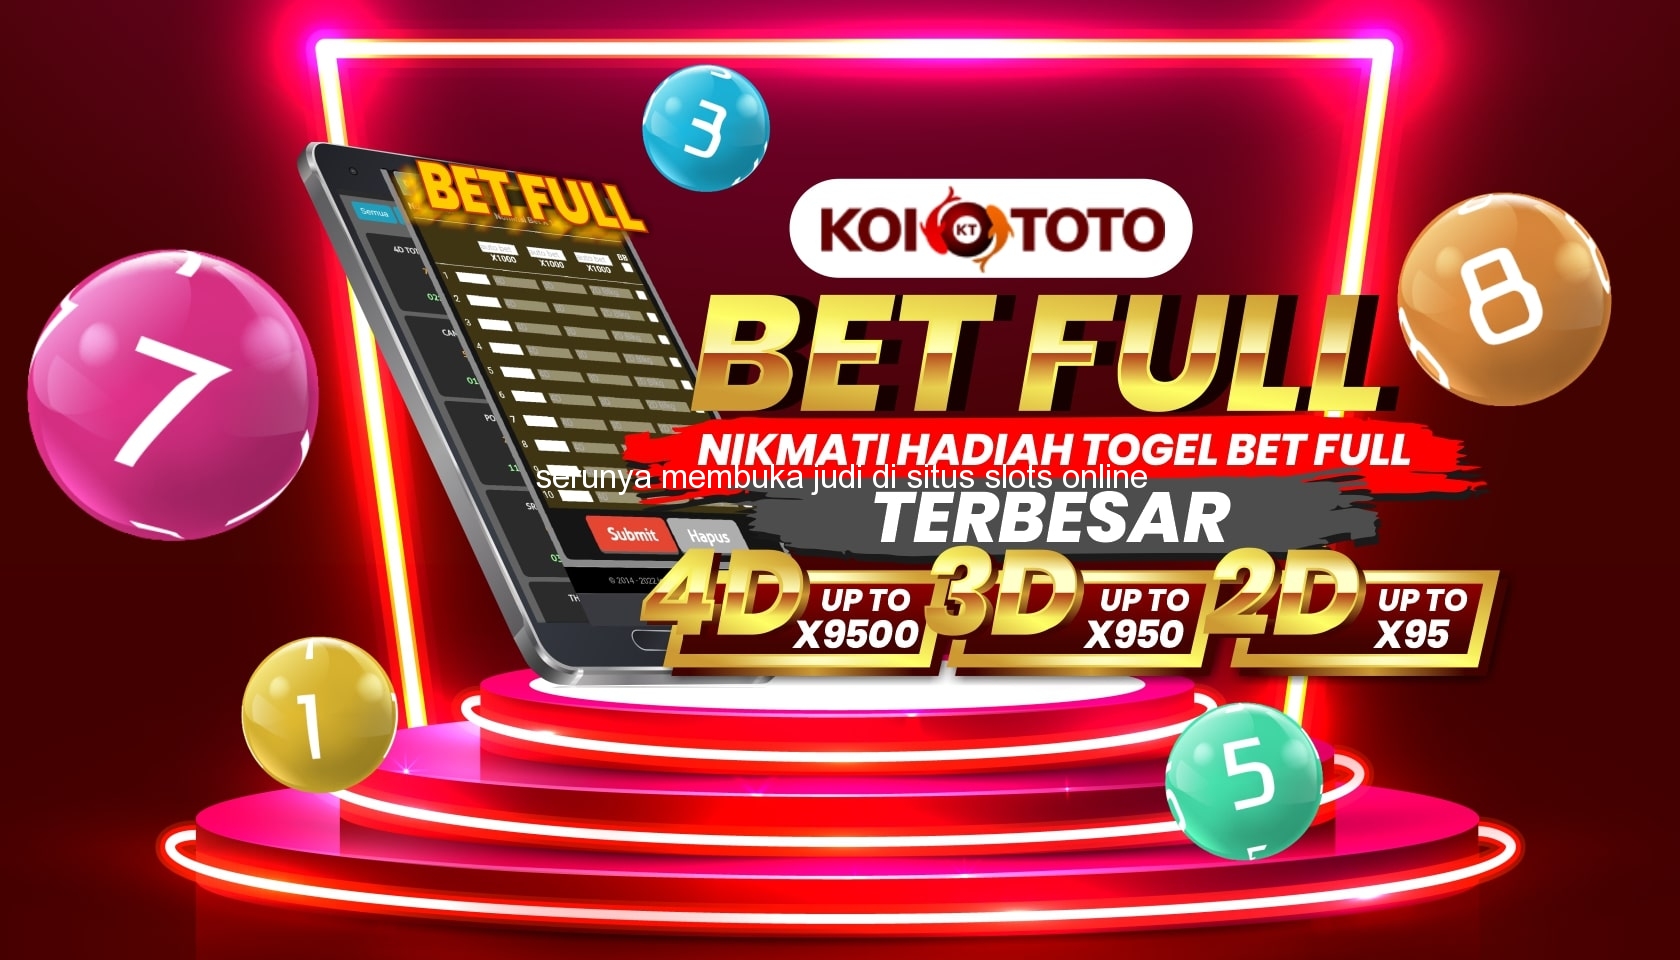 Serunya Membuka Judi di Situs Slots Online Terbaik di Kalipuro – KOITOTO